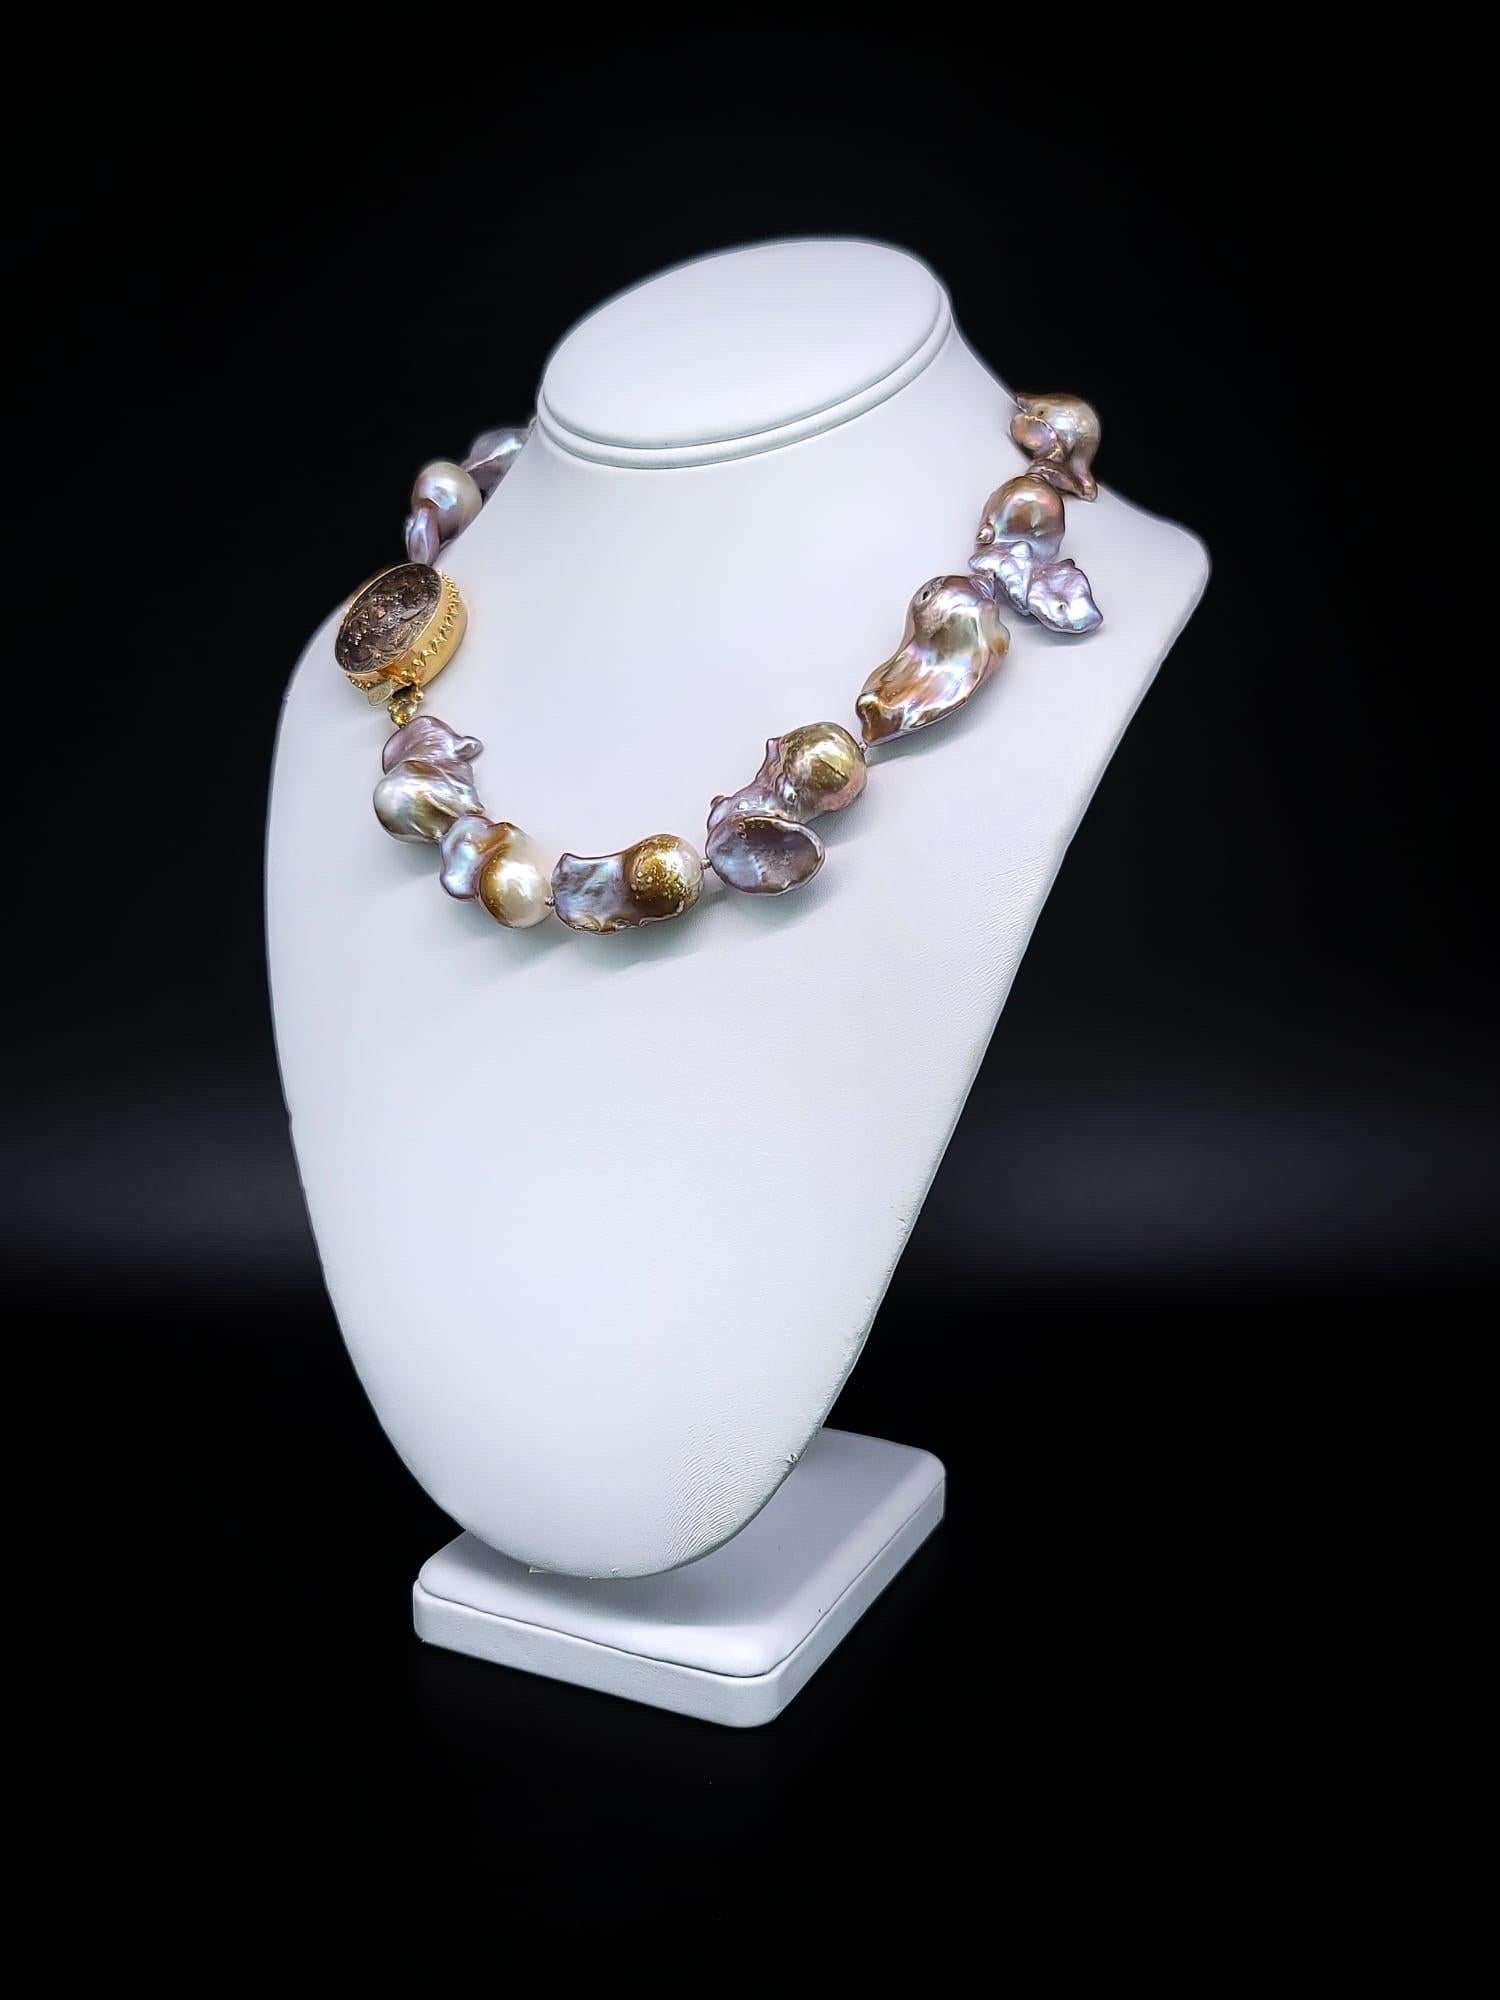 Exquisite Einzigartigkeit. Jenseits der gewöhnlichen Perlenstränge liegt ein wahrhaft bemerkenswertes Stück - ein Collier, das mit bezaubernden Barockperlen geschmückt ist. Diese Perlen versprühen einen unwiderstehlichen Charme mit ihrem